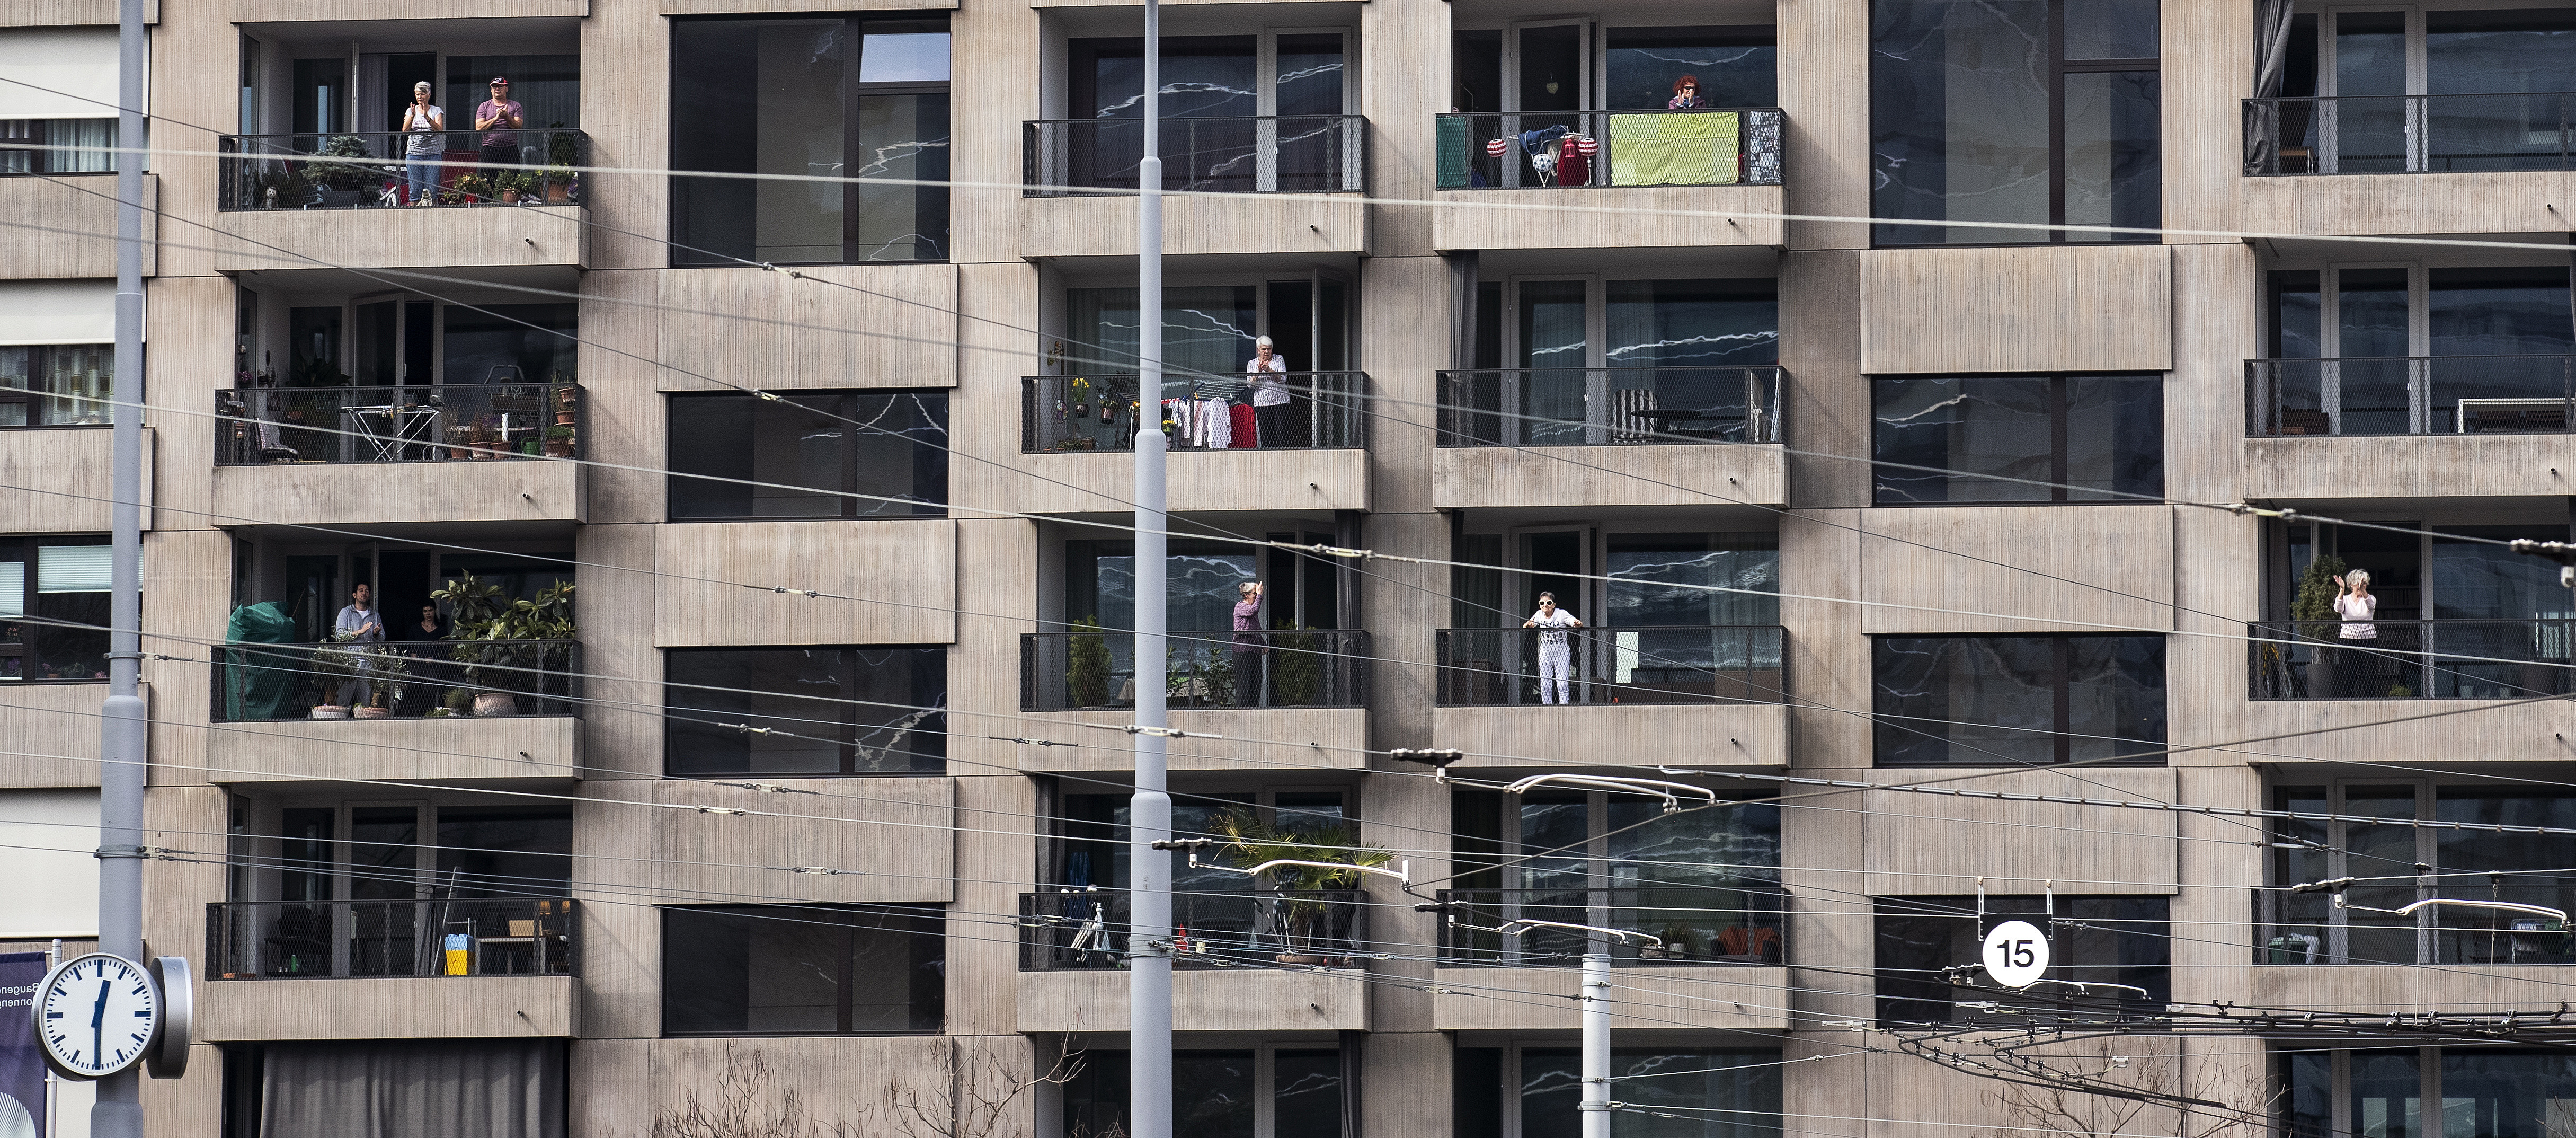 Mehrstöckiges Wohnhaus mit grauer Fassade. Einzelne Bewohnerinnen und Bewohner stehen auf Balkonen neben Wäscheständern und Topfpflanzen und blicken auf die Straße.